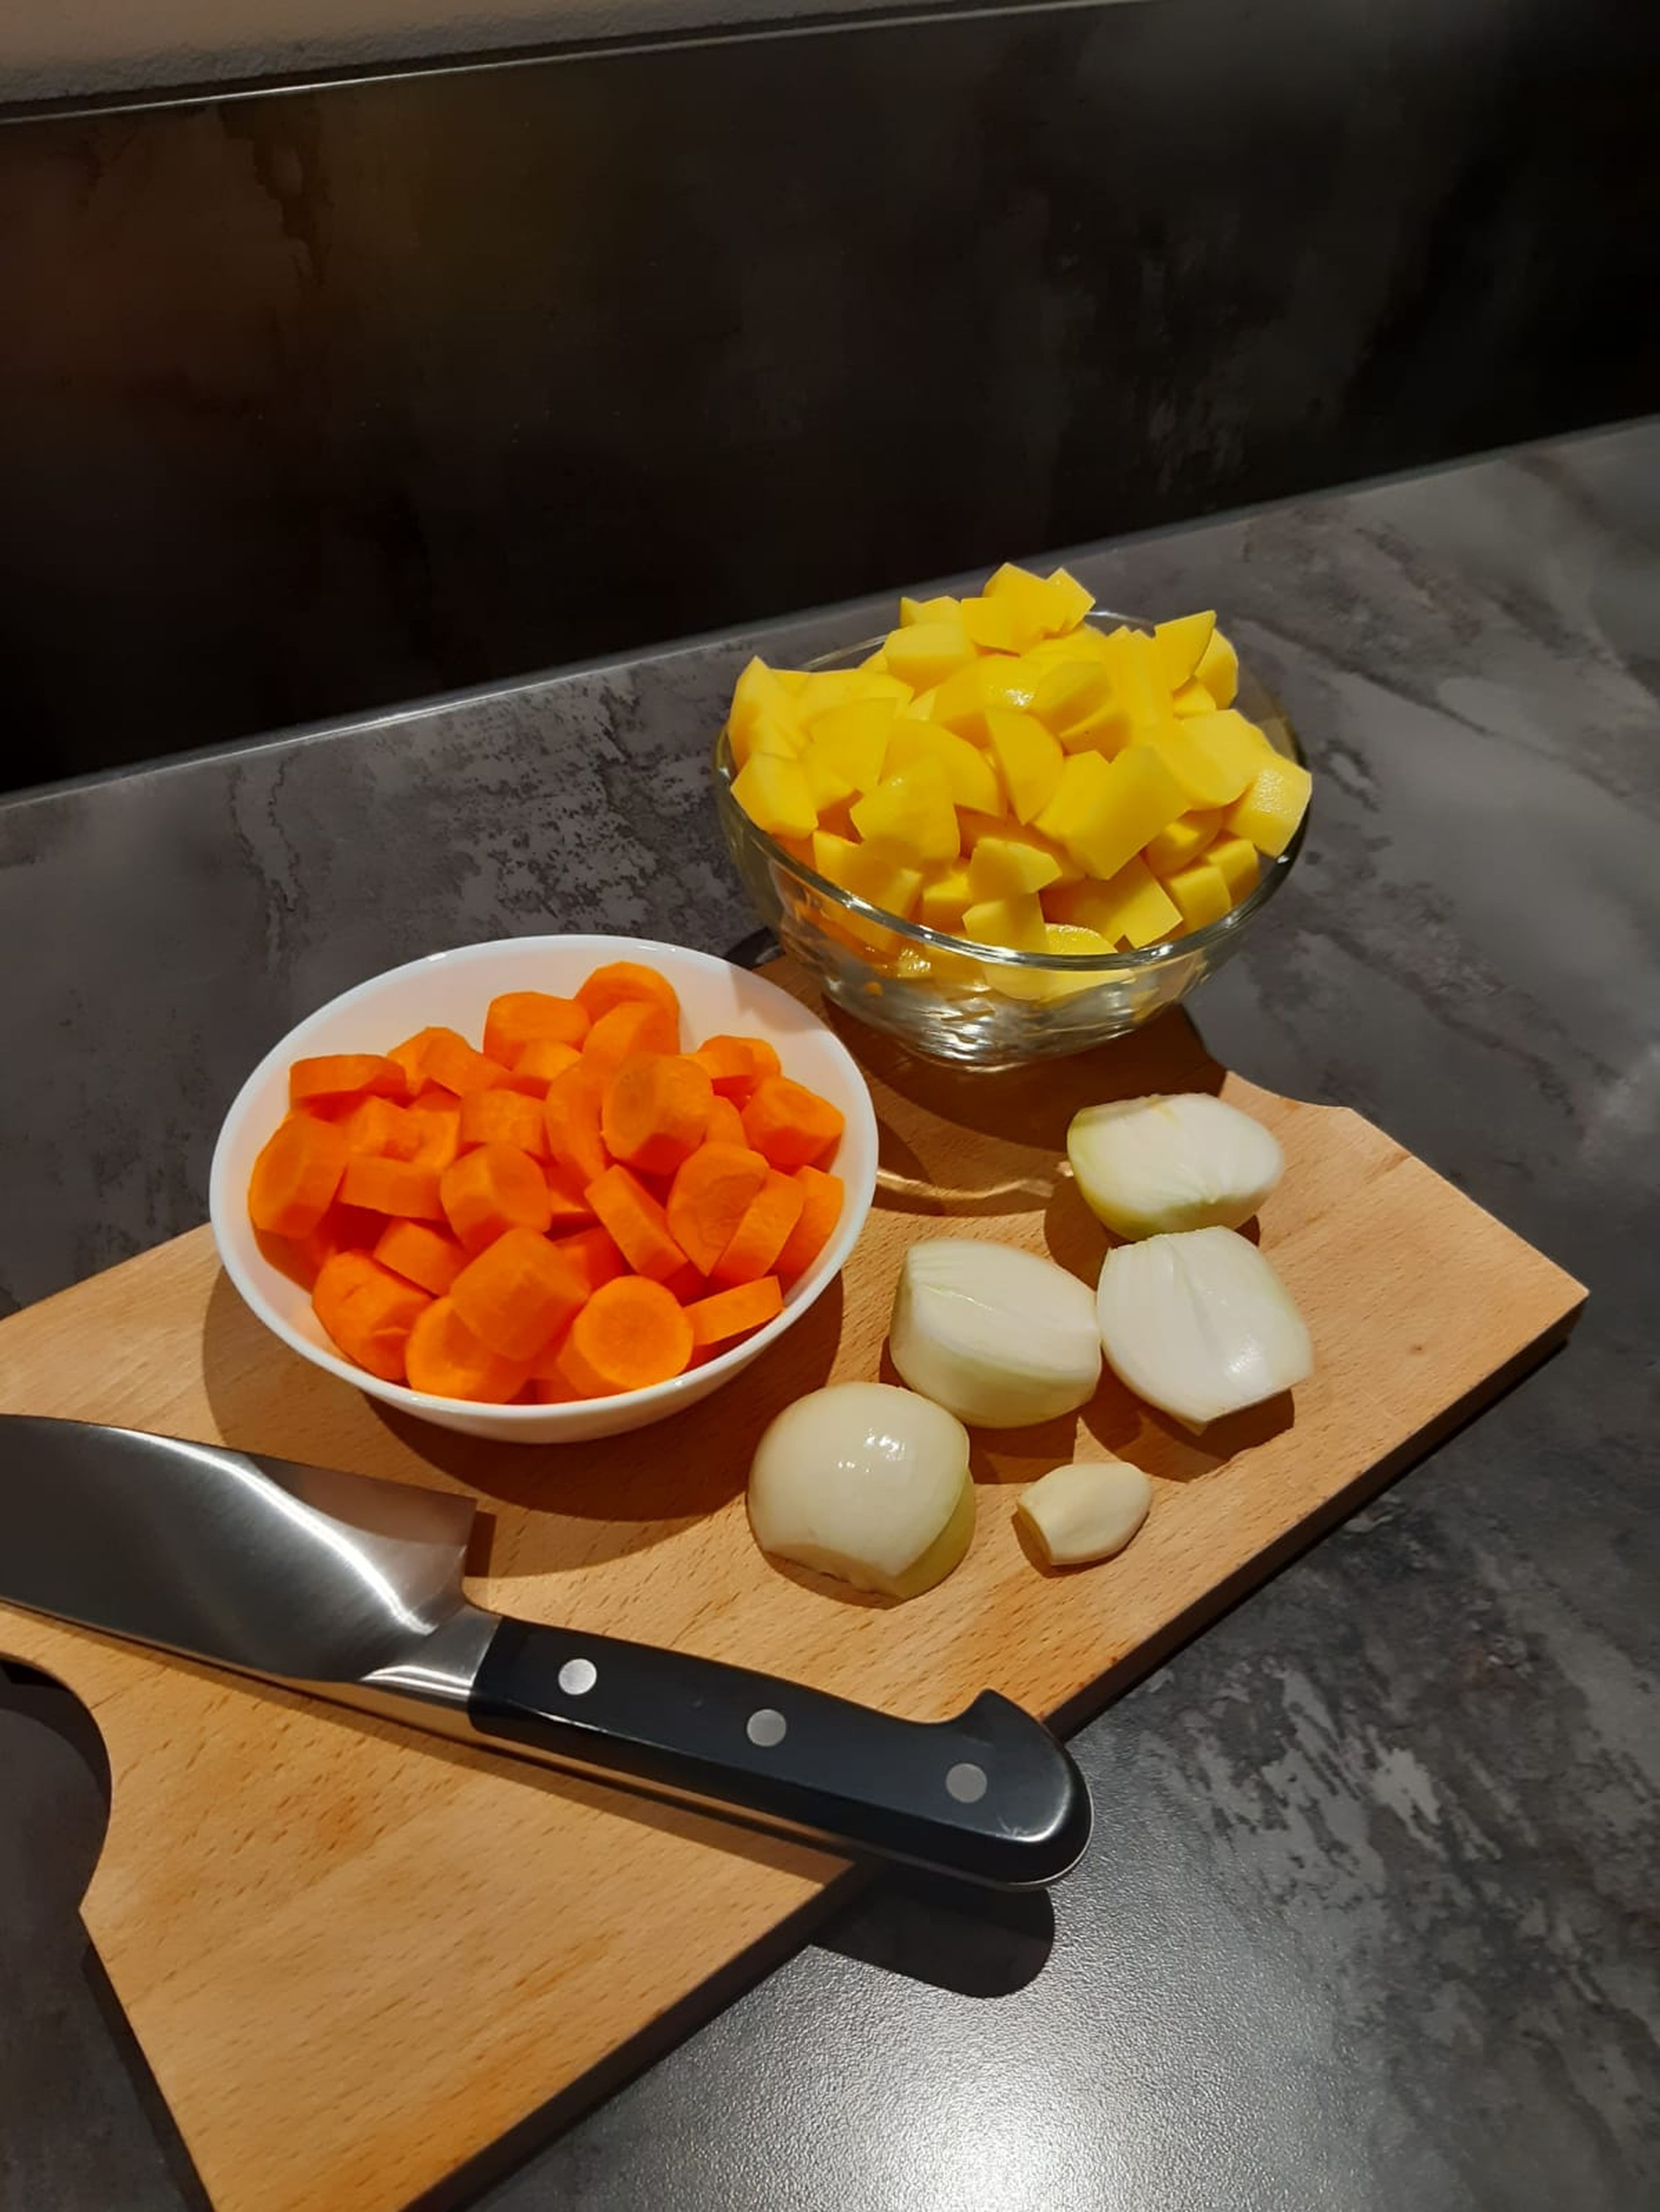 Zwiebeln, Knoblauch, Karotten und Kartoffeln schälen. Die Zwiebeln halbieren und die Kartoffeln und Karotten in 1 cm große Stücke schneiden